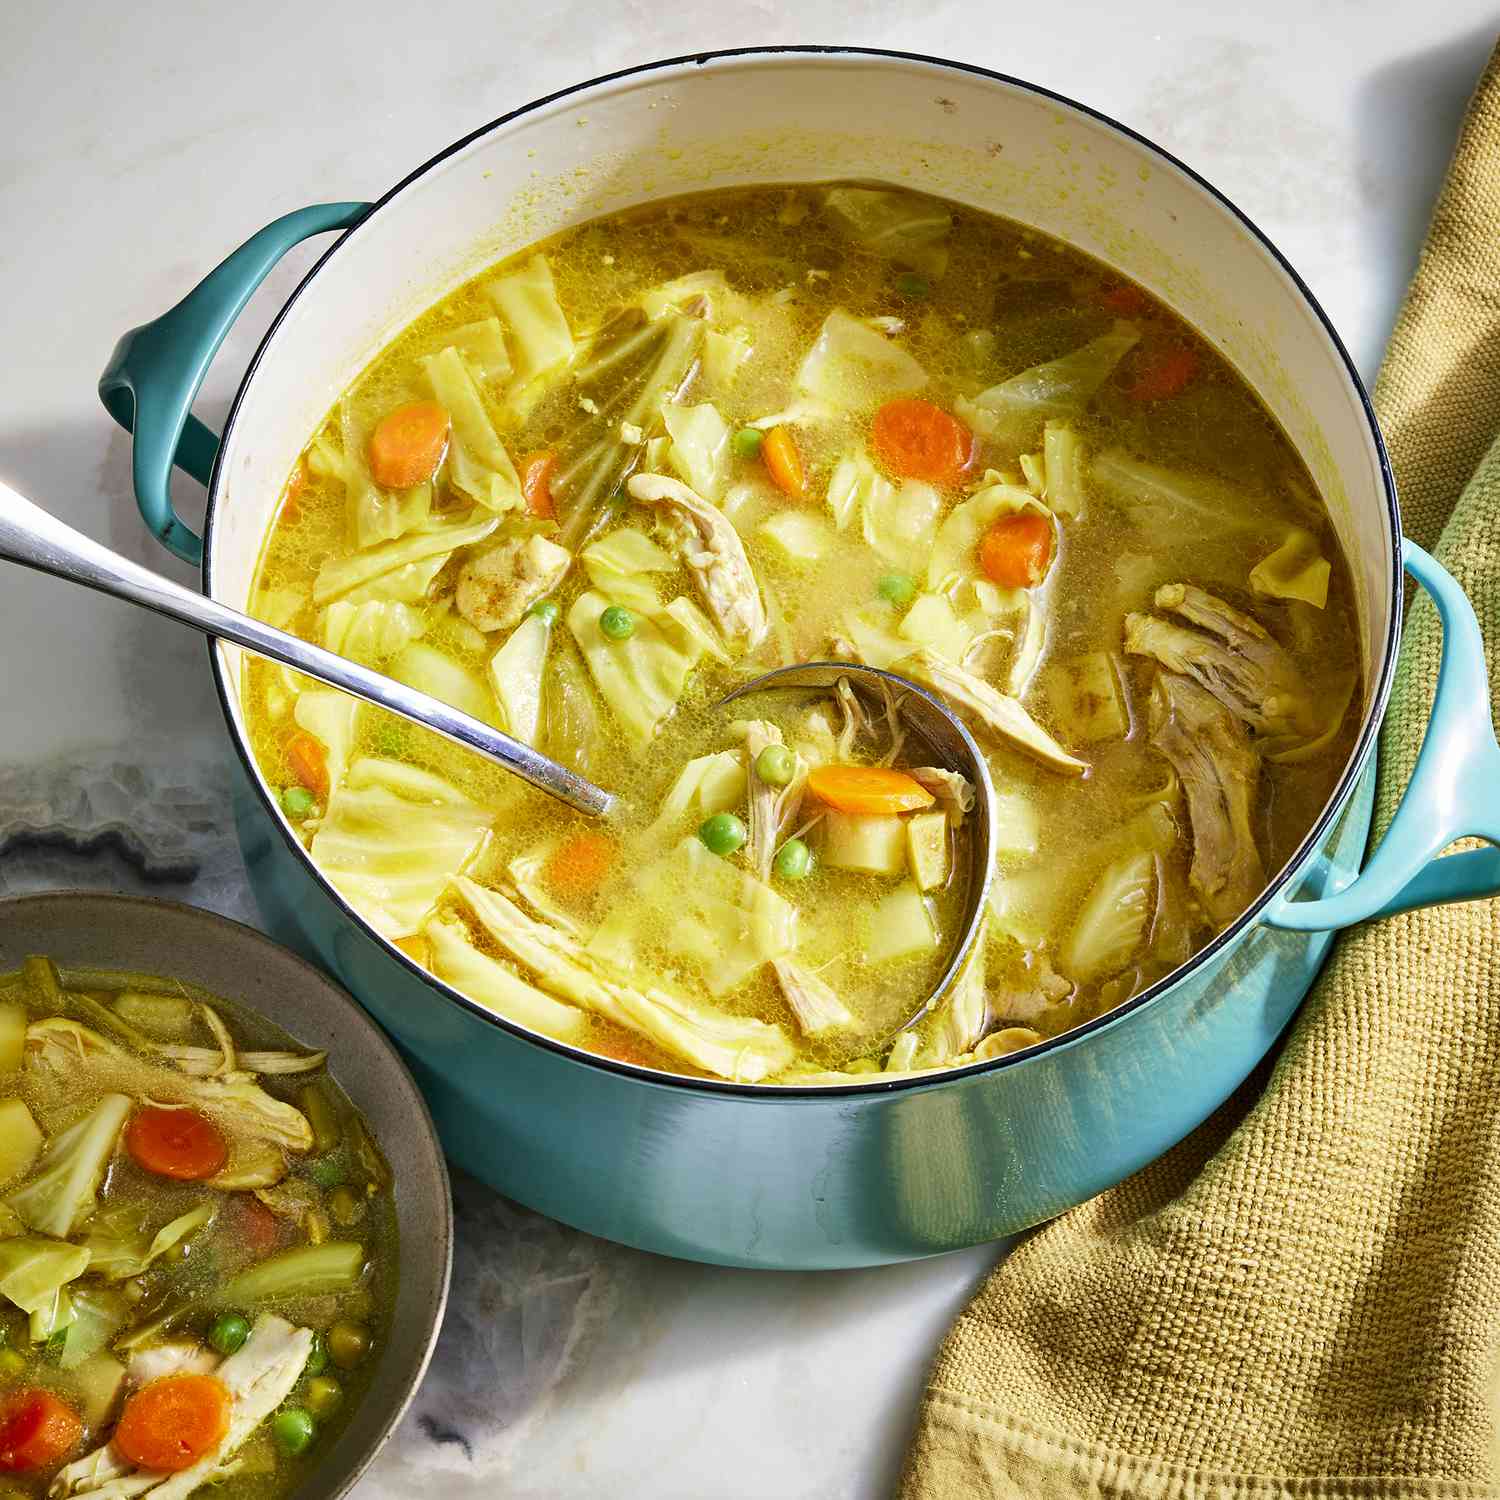 Fotos de recetas hechas en un tazón haciendo sopa de pollo y repollo en un tazón